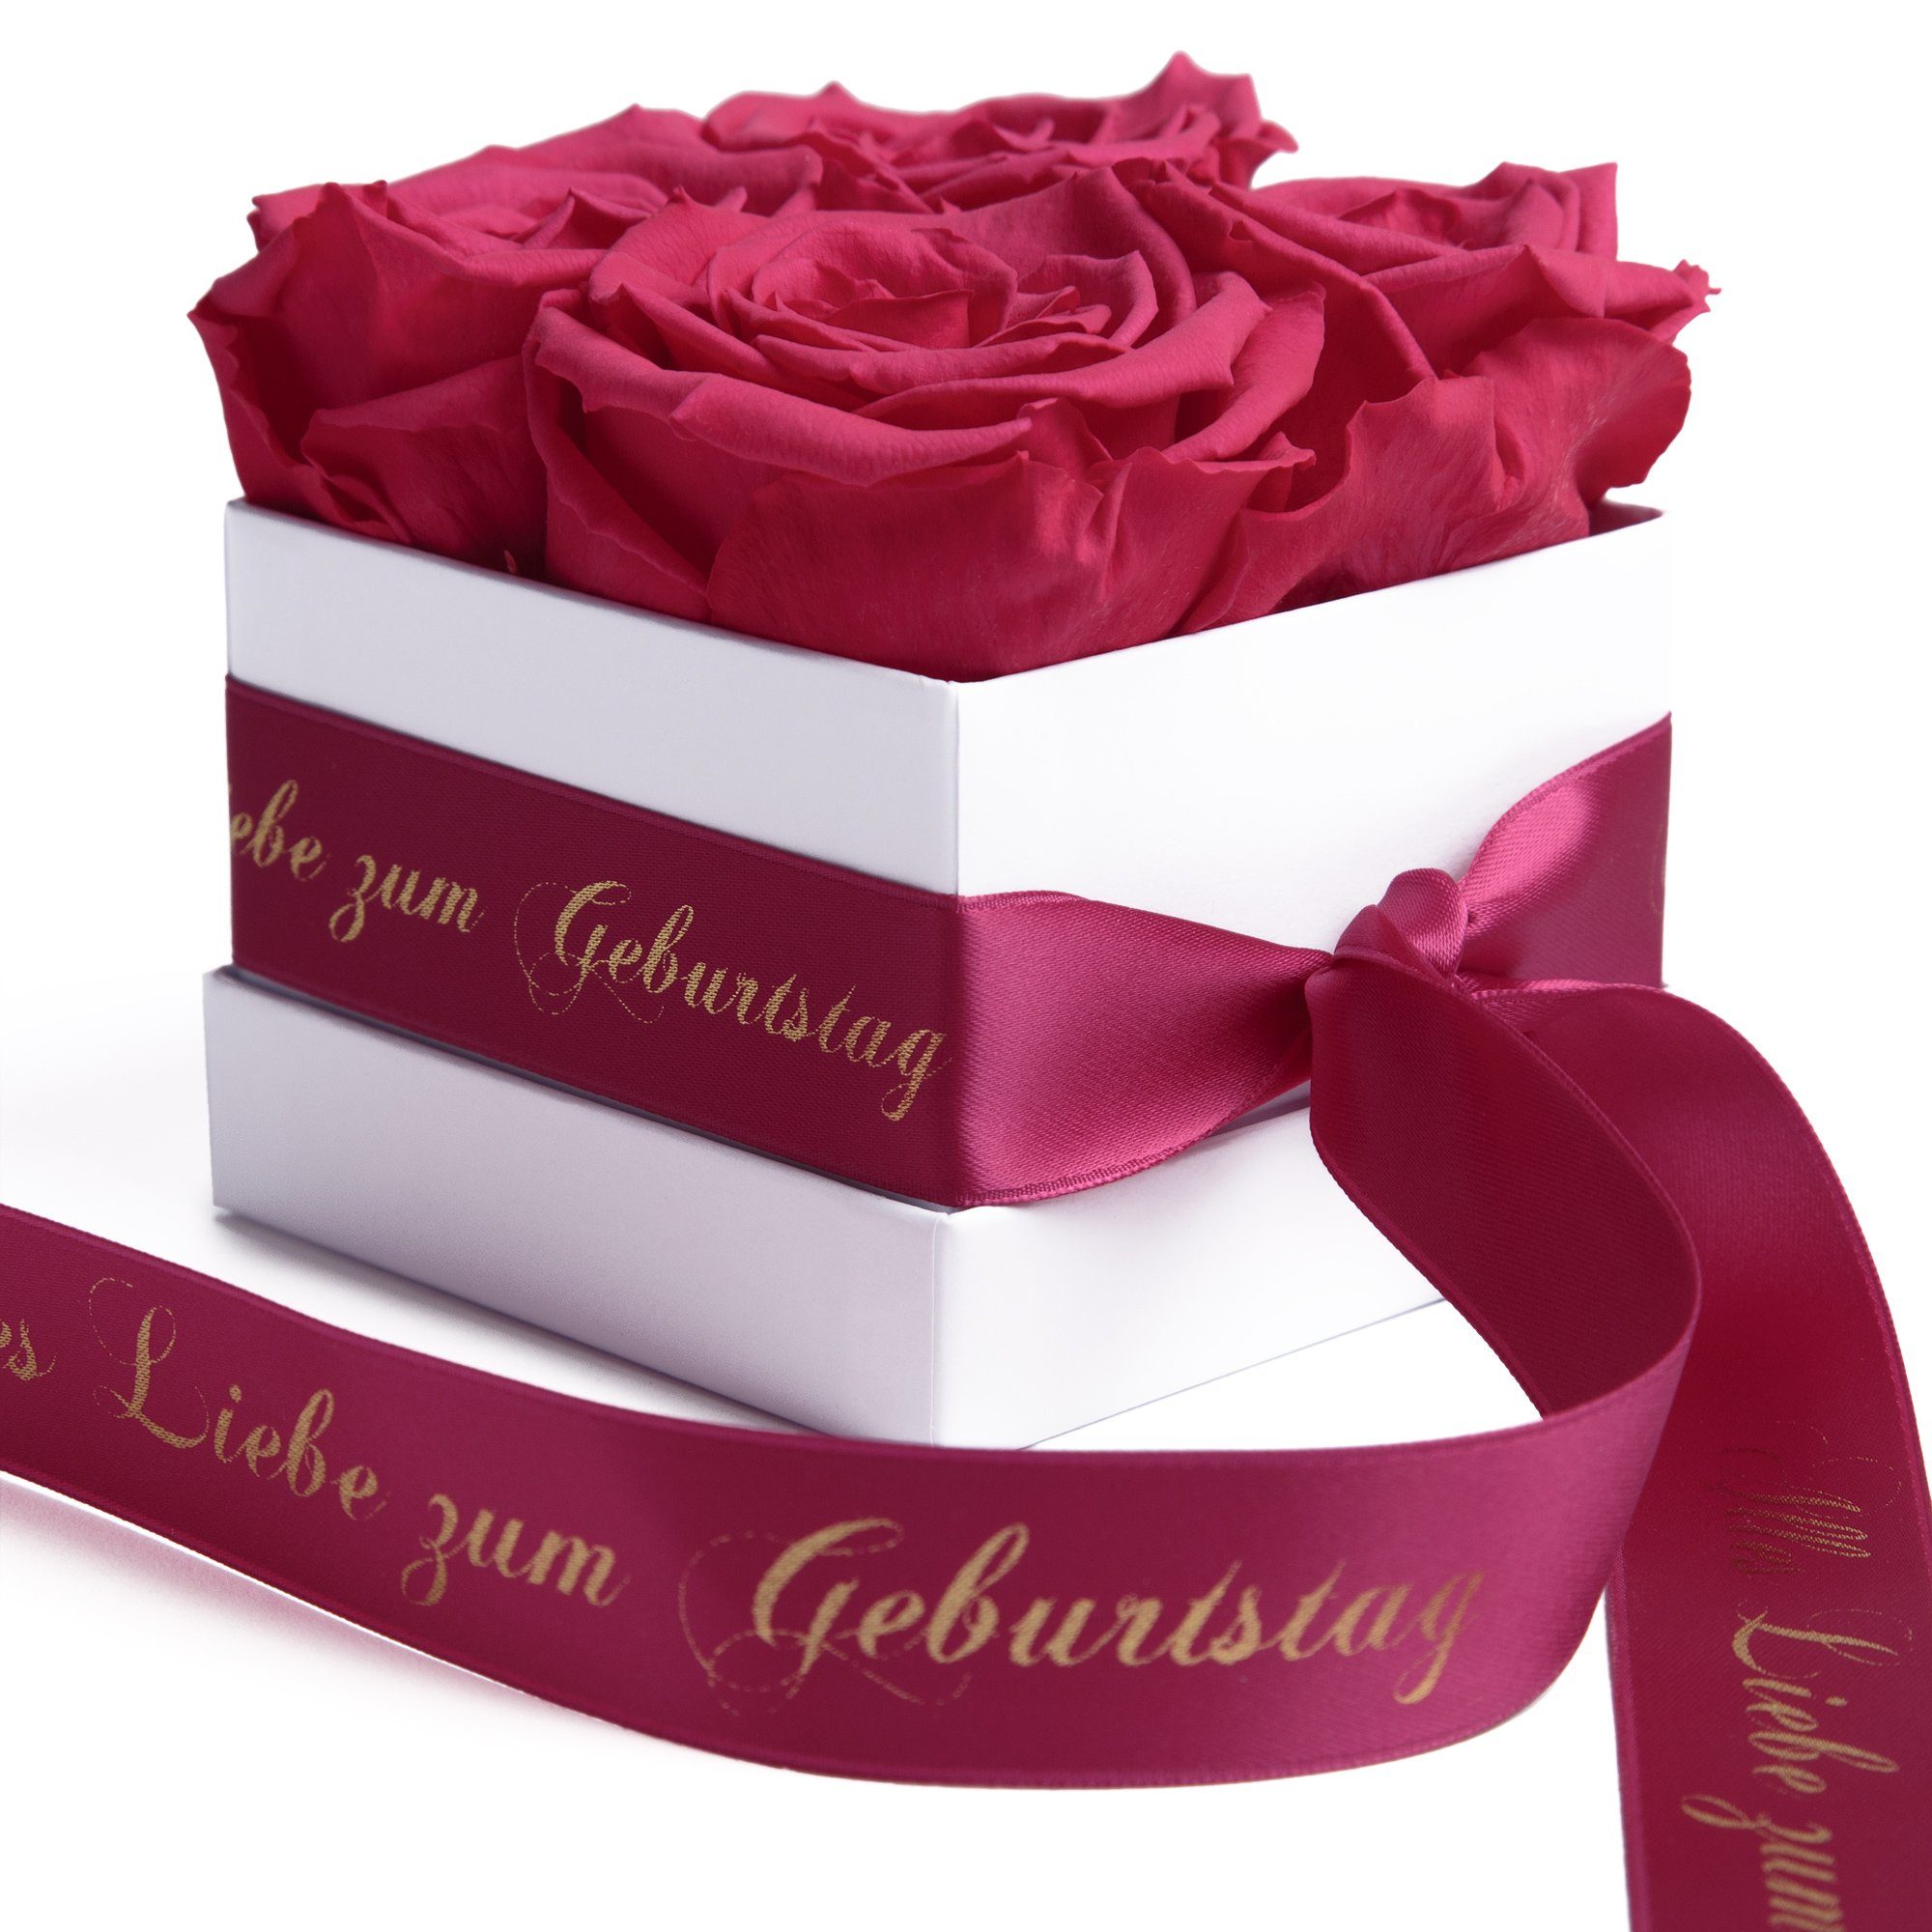 ROSEMARIE SCHULZ Heidelberg Dekoobjekt Infinity Rosenbox Alles Liebe zum Geburtstag Blumen Geschenk, Echte Rose haltbar bis zu 3 Jahre pink